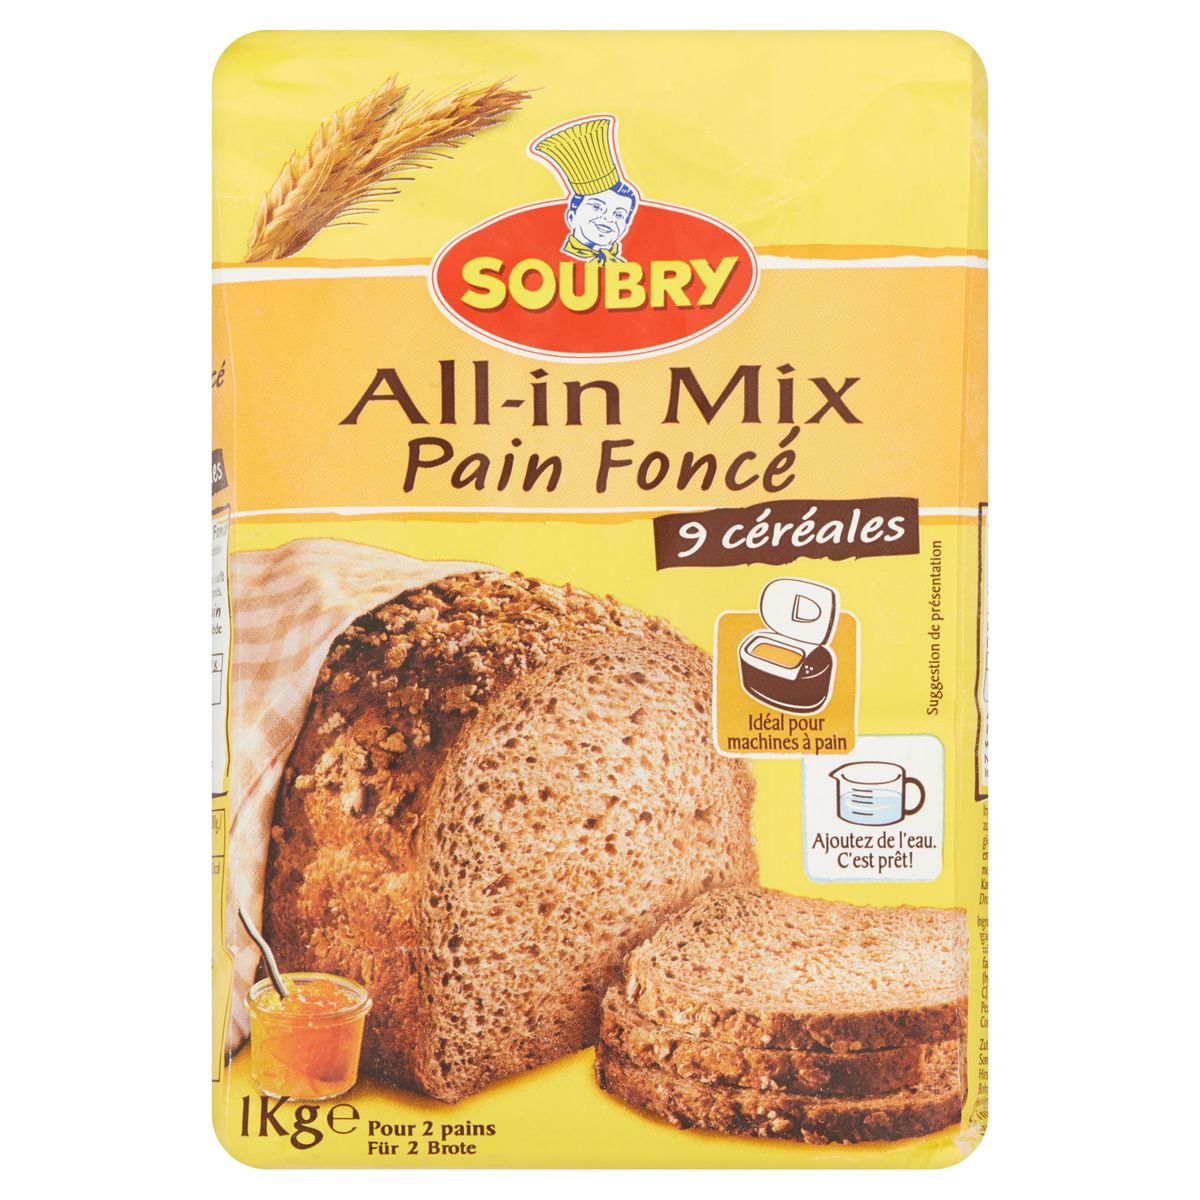 Soubry All-in Mix Pain Foncé 1 kg